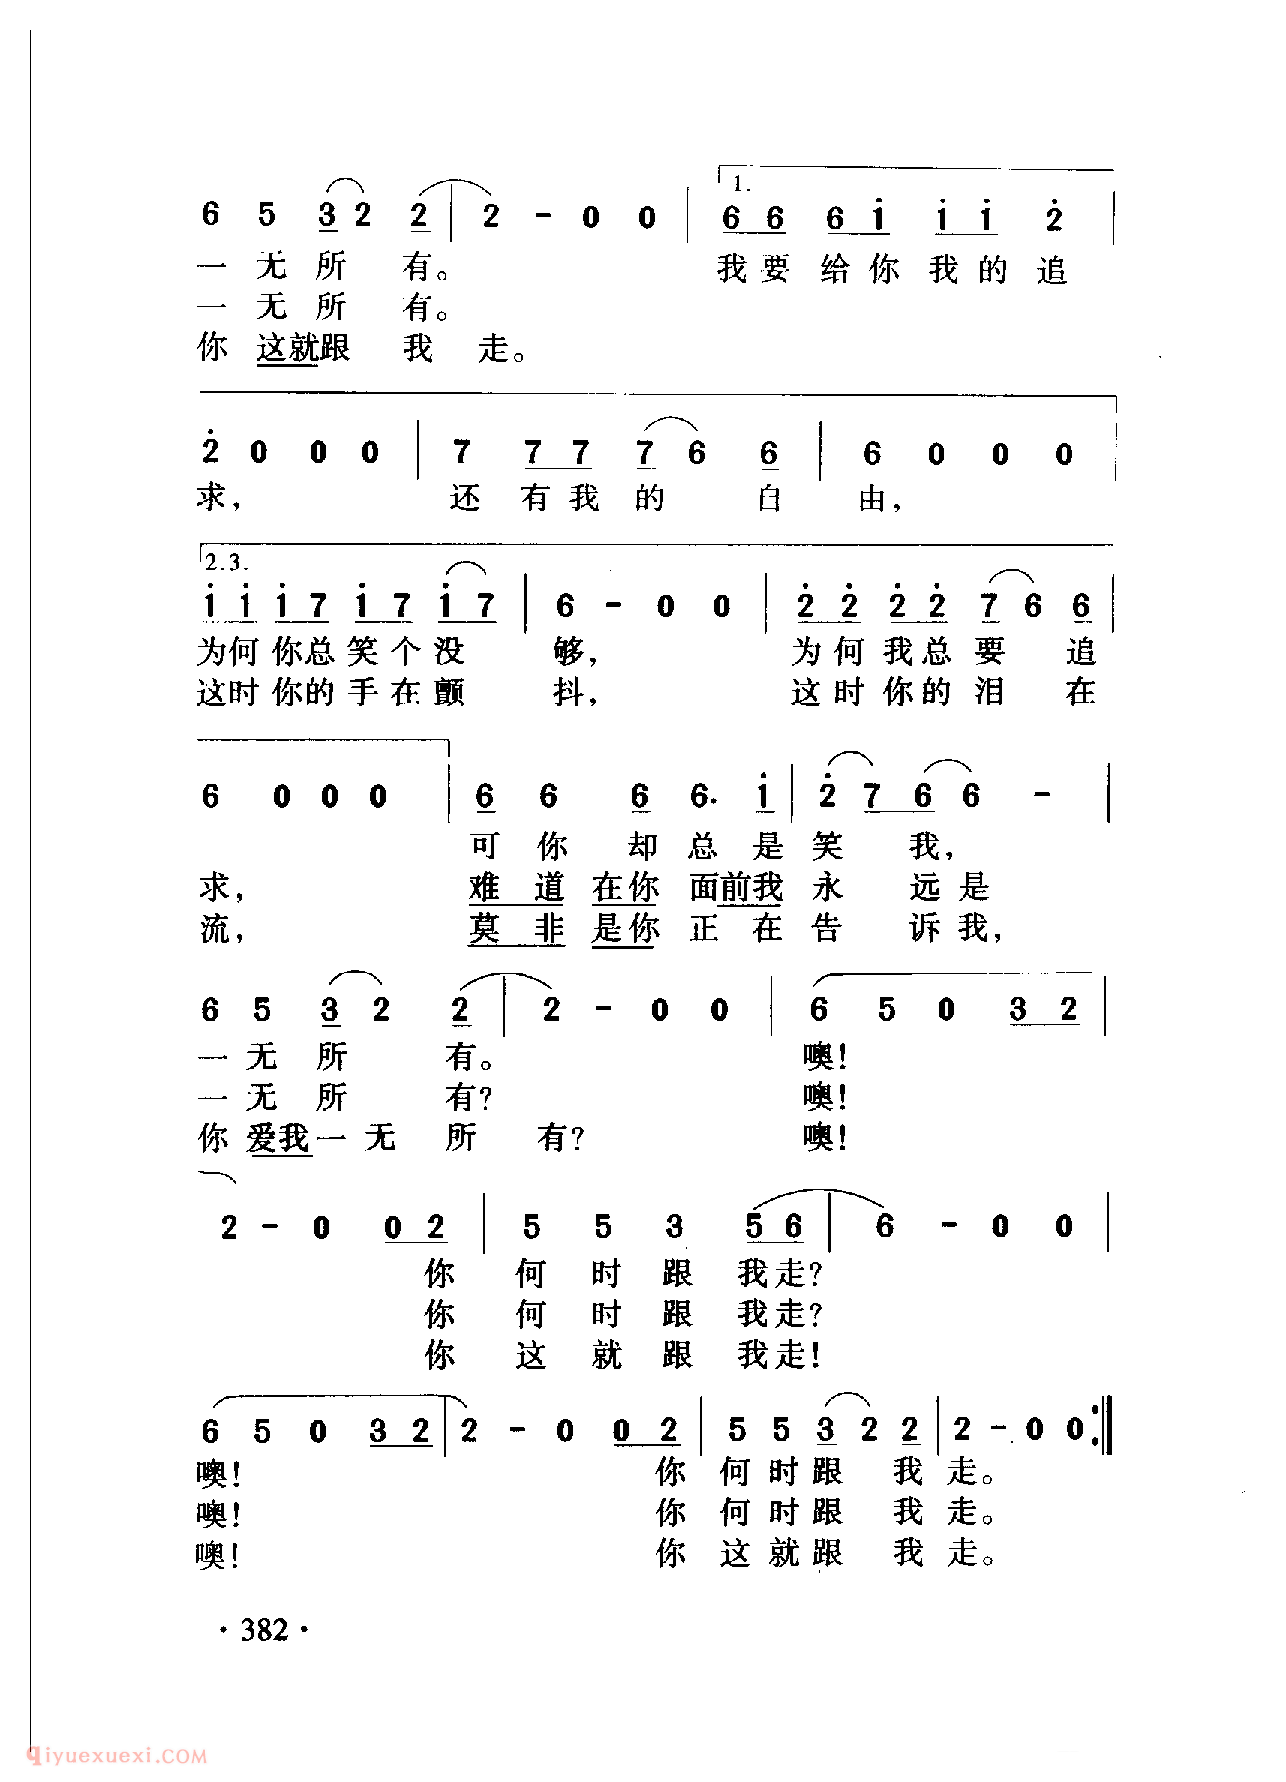 中国名歌[一无所有]乐谱